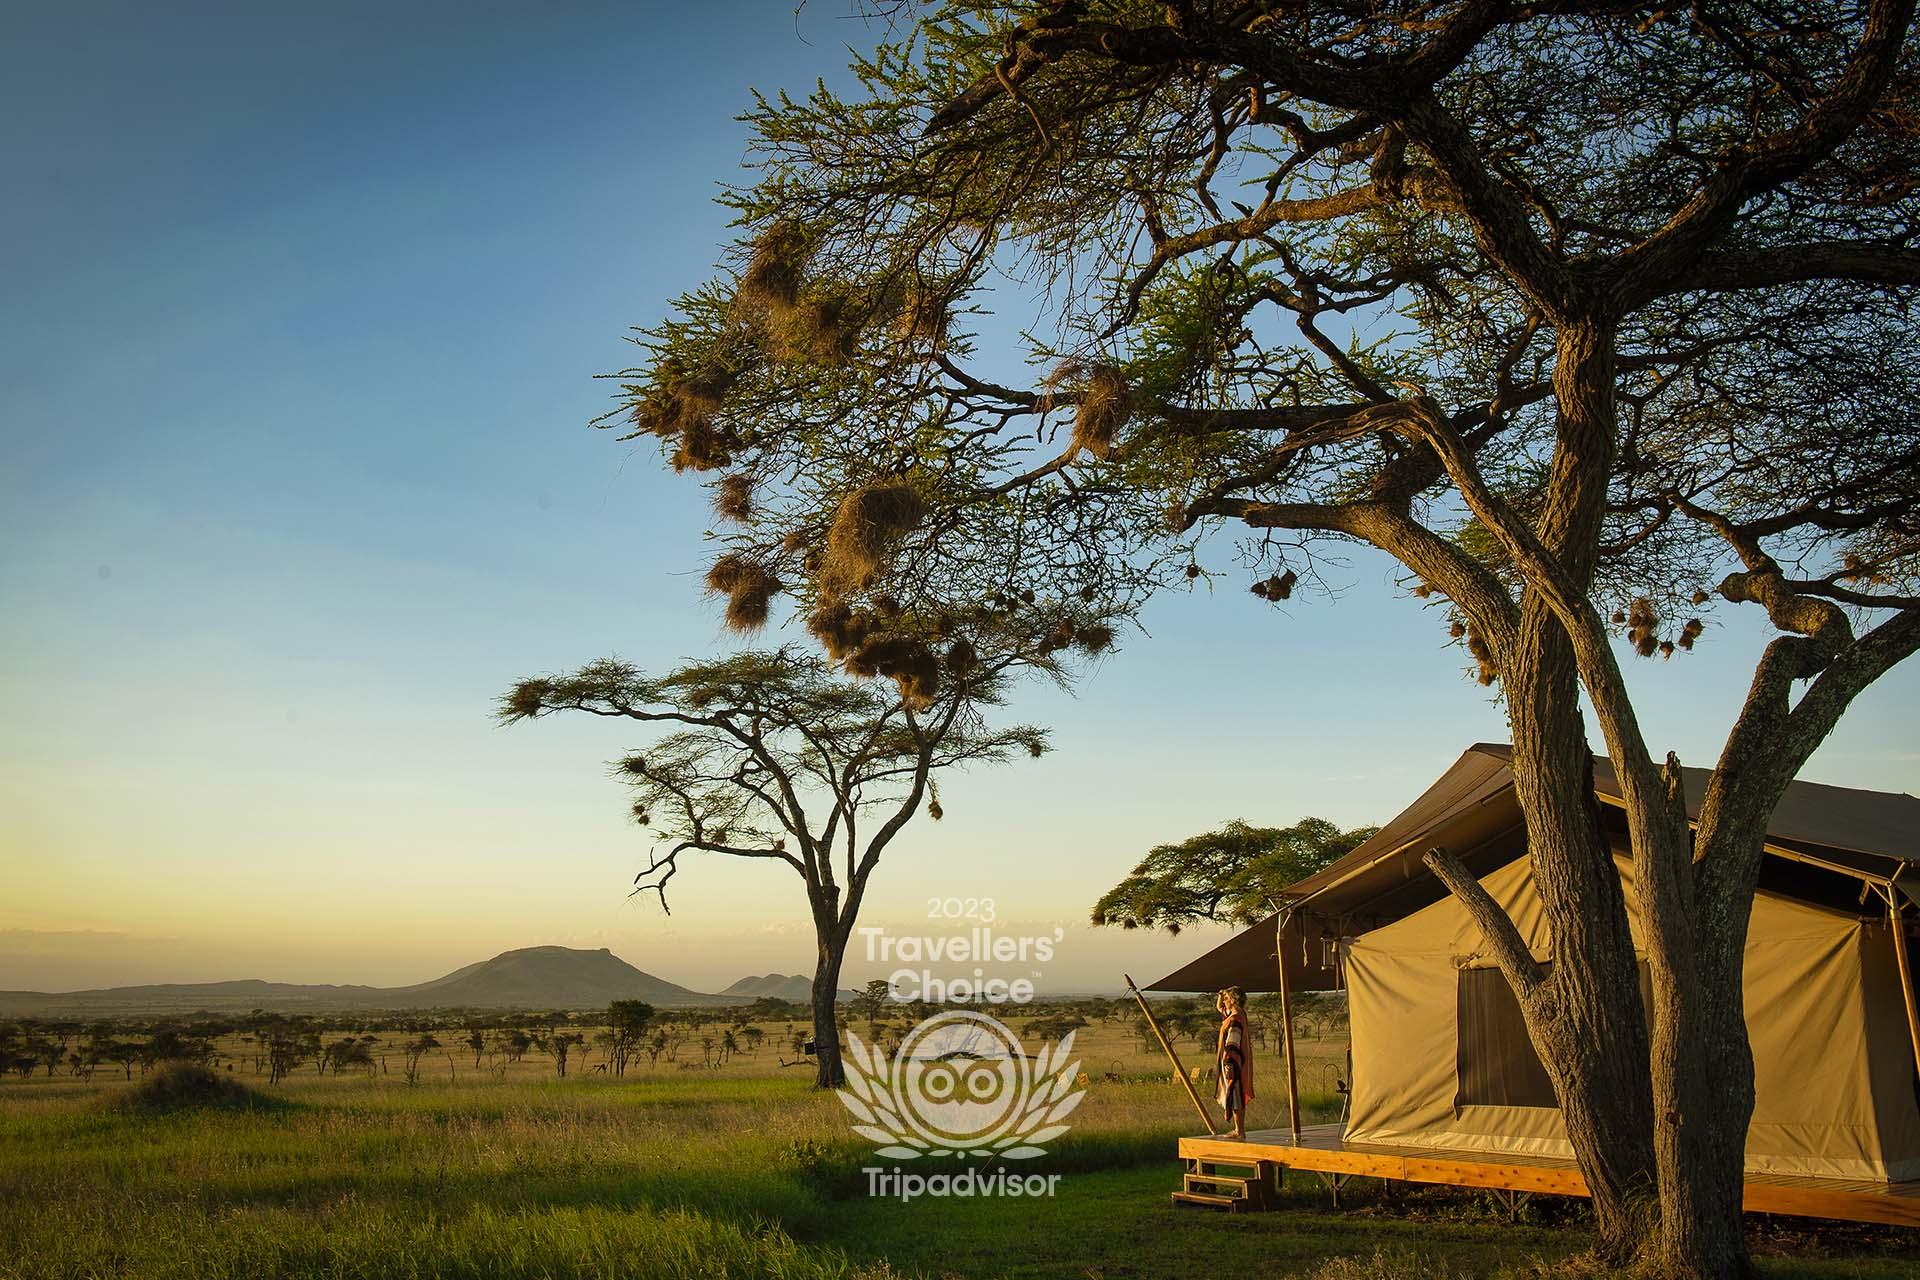 View from Siringit Serengeti Camp